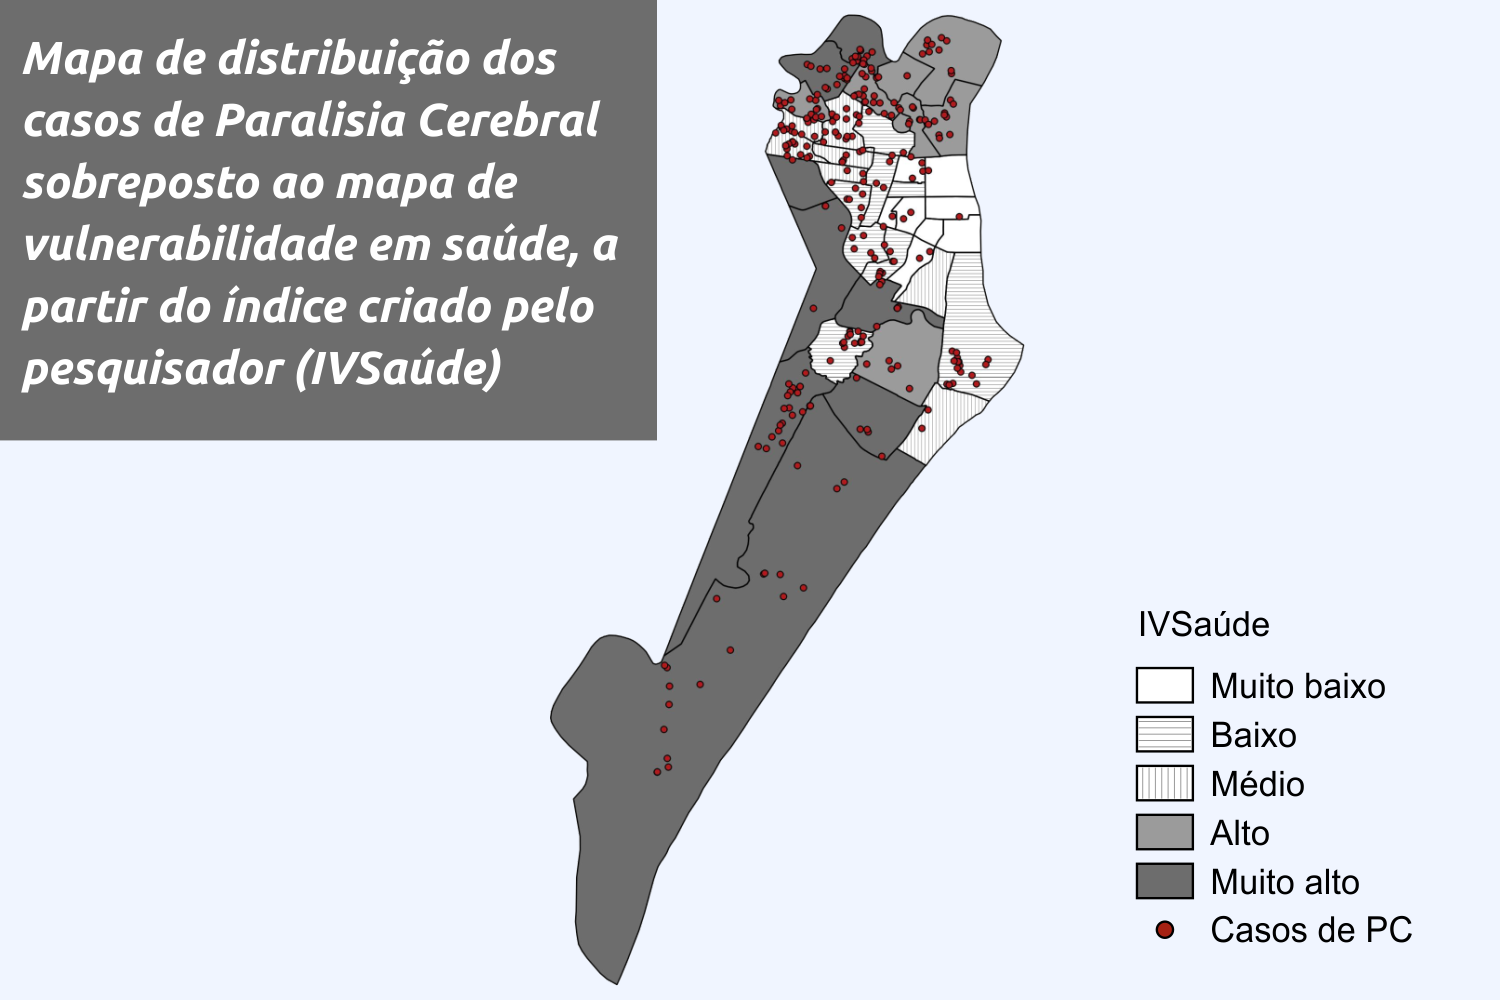 No mapa de Aracaju, é possível perceber a relação entre a prevalência de casos de paralisia cerebral e as regiões mais vulneráveis em relação à saúde. (Infográfico: tese do pesquisador – adaptado por Marcilio Costa)